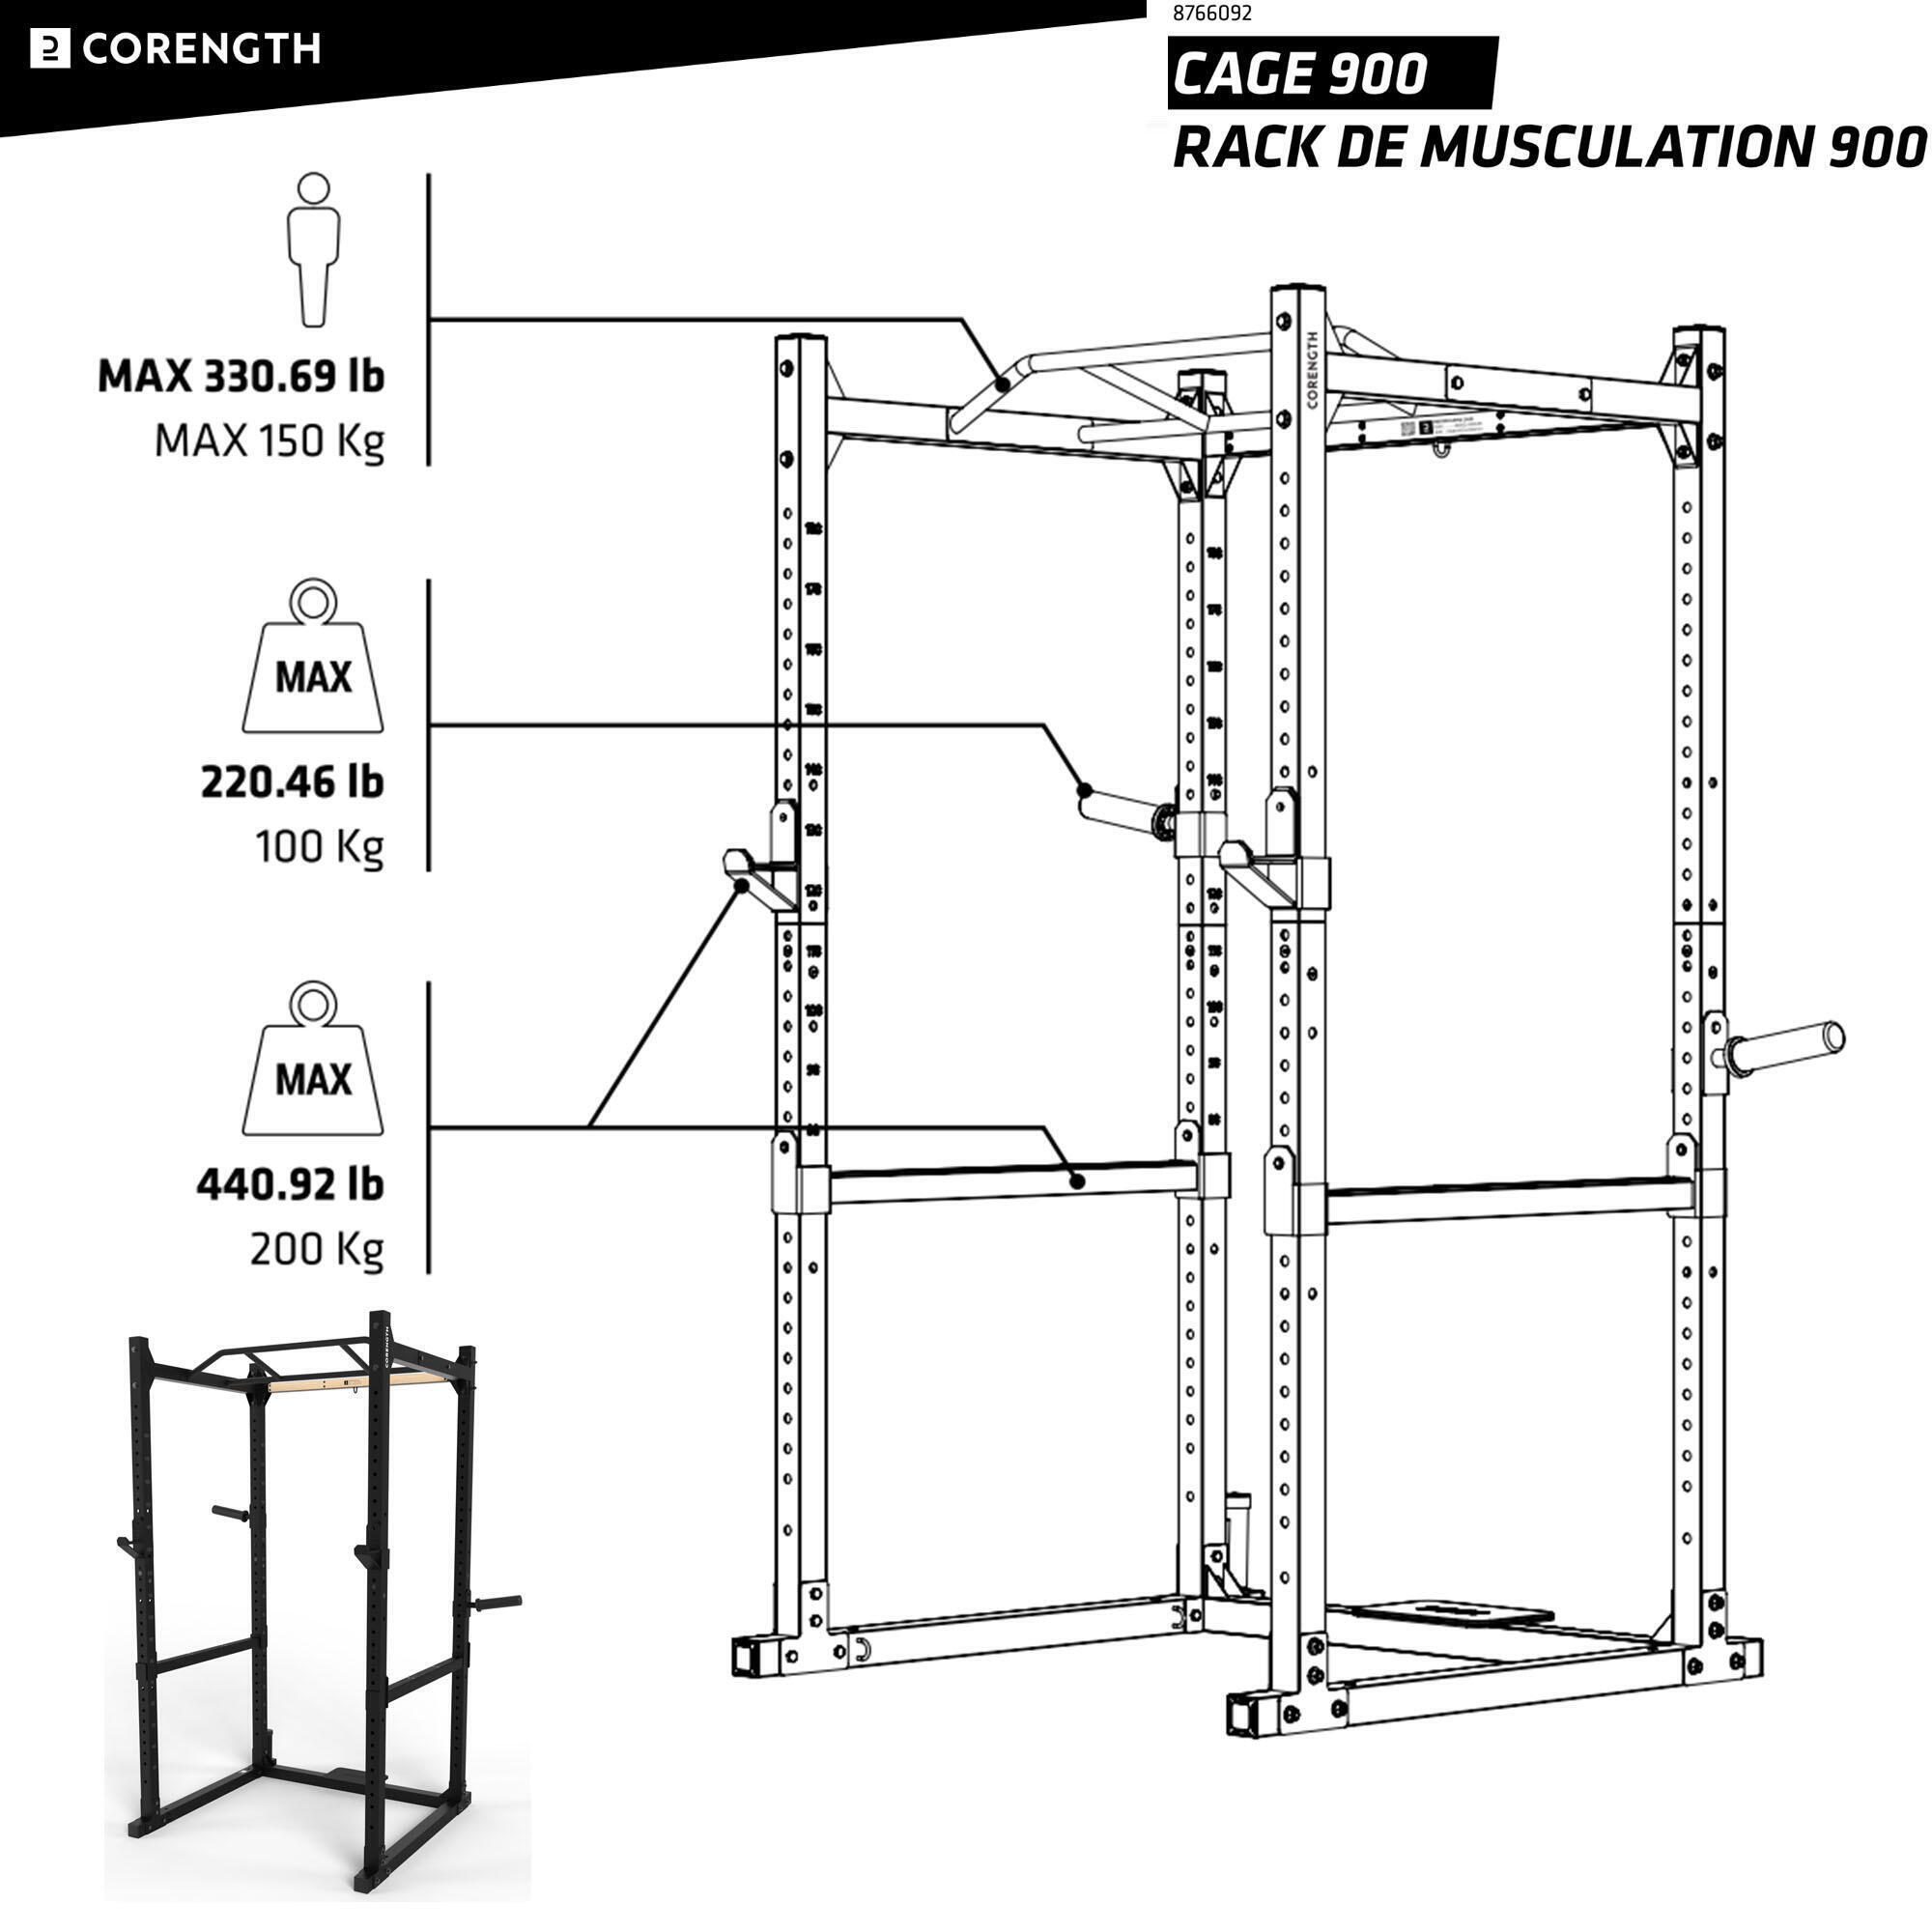 Rack de musculação cage 900 2023 corength instruções reparação